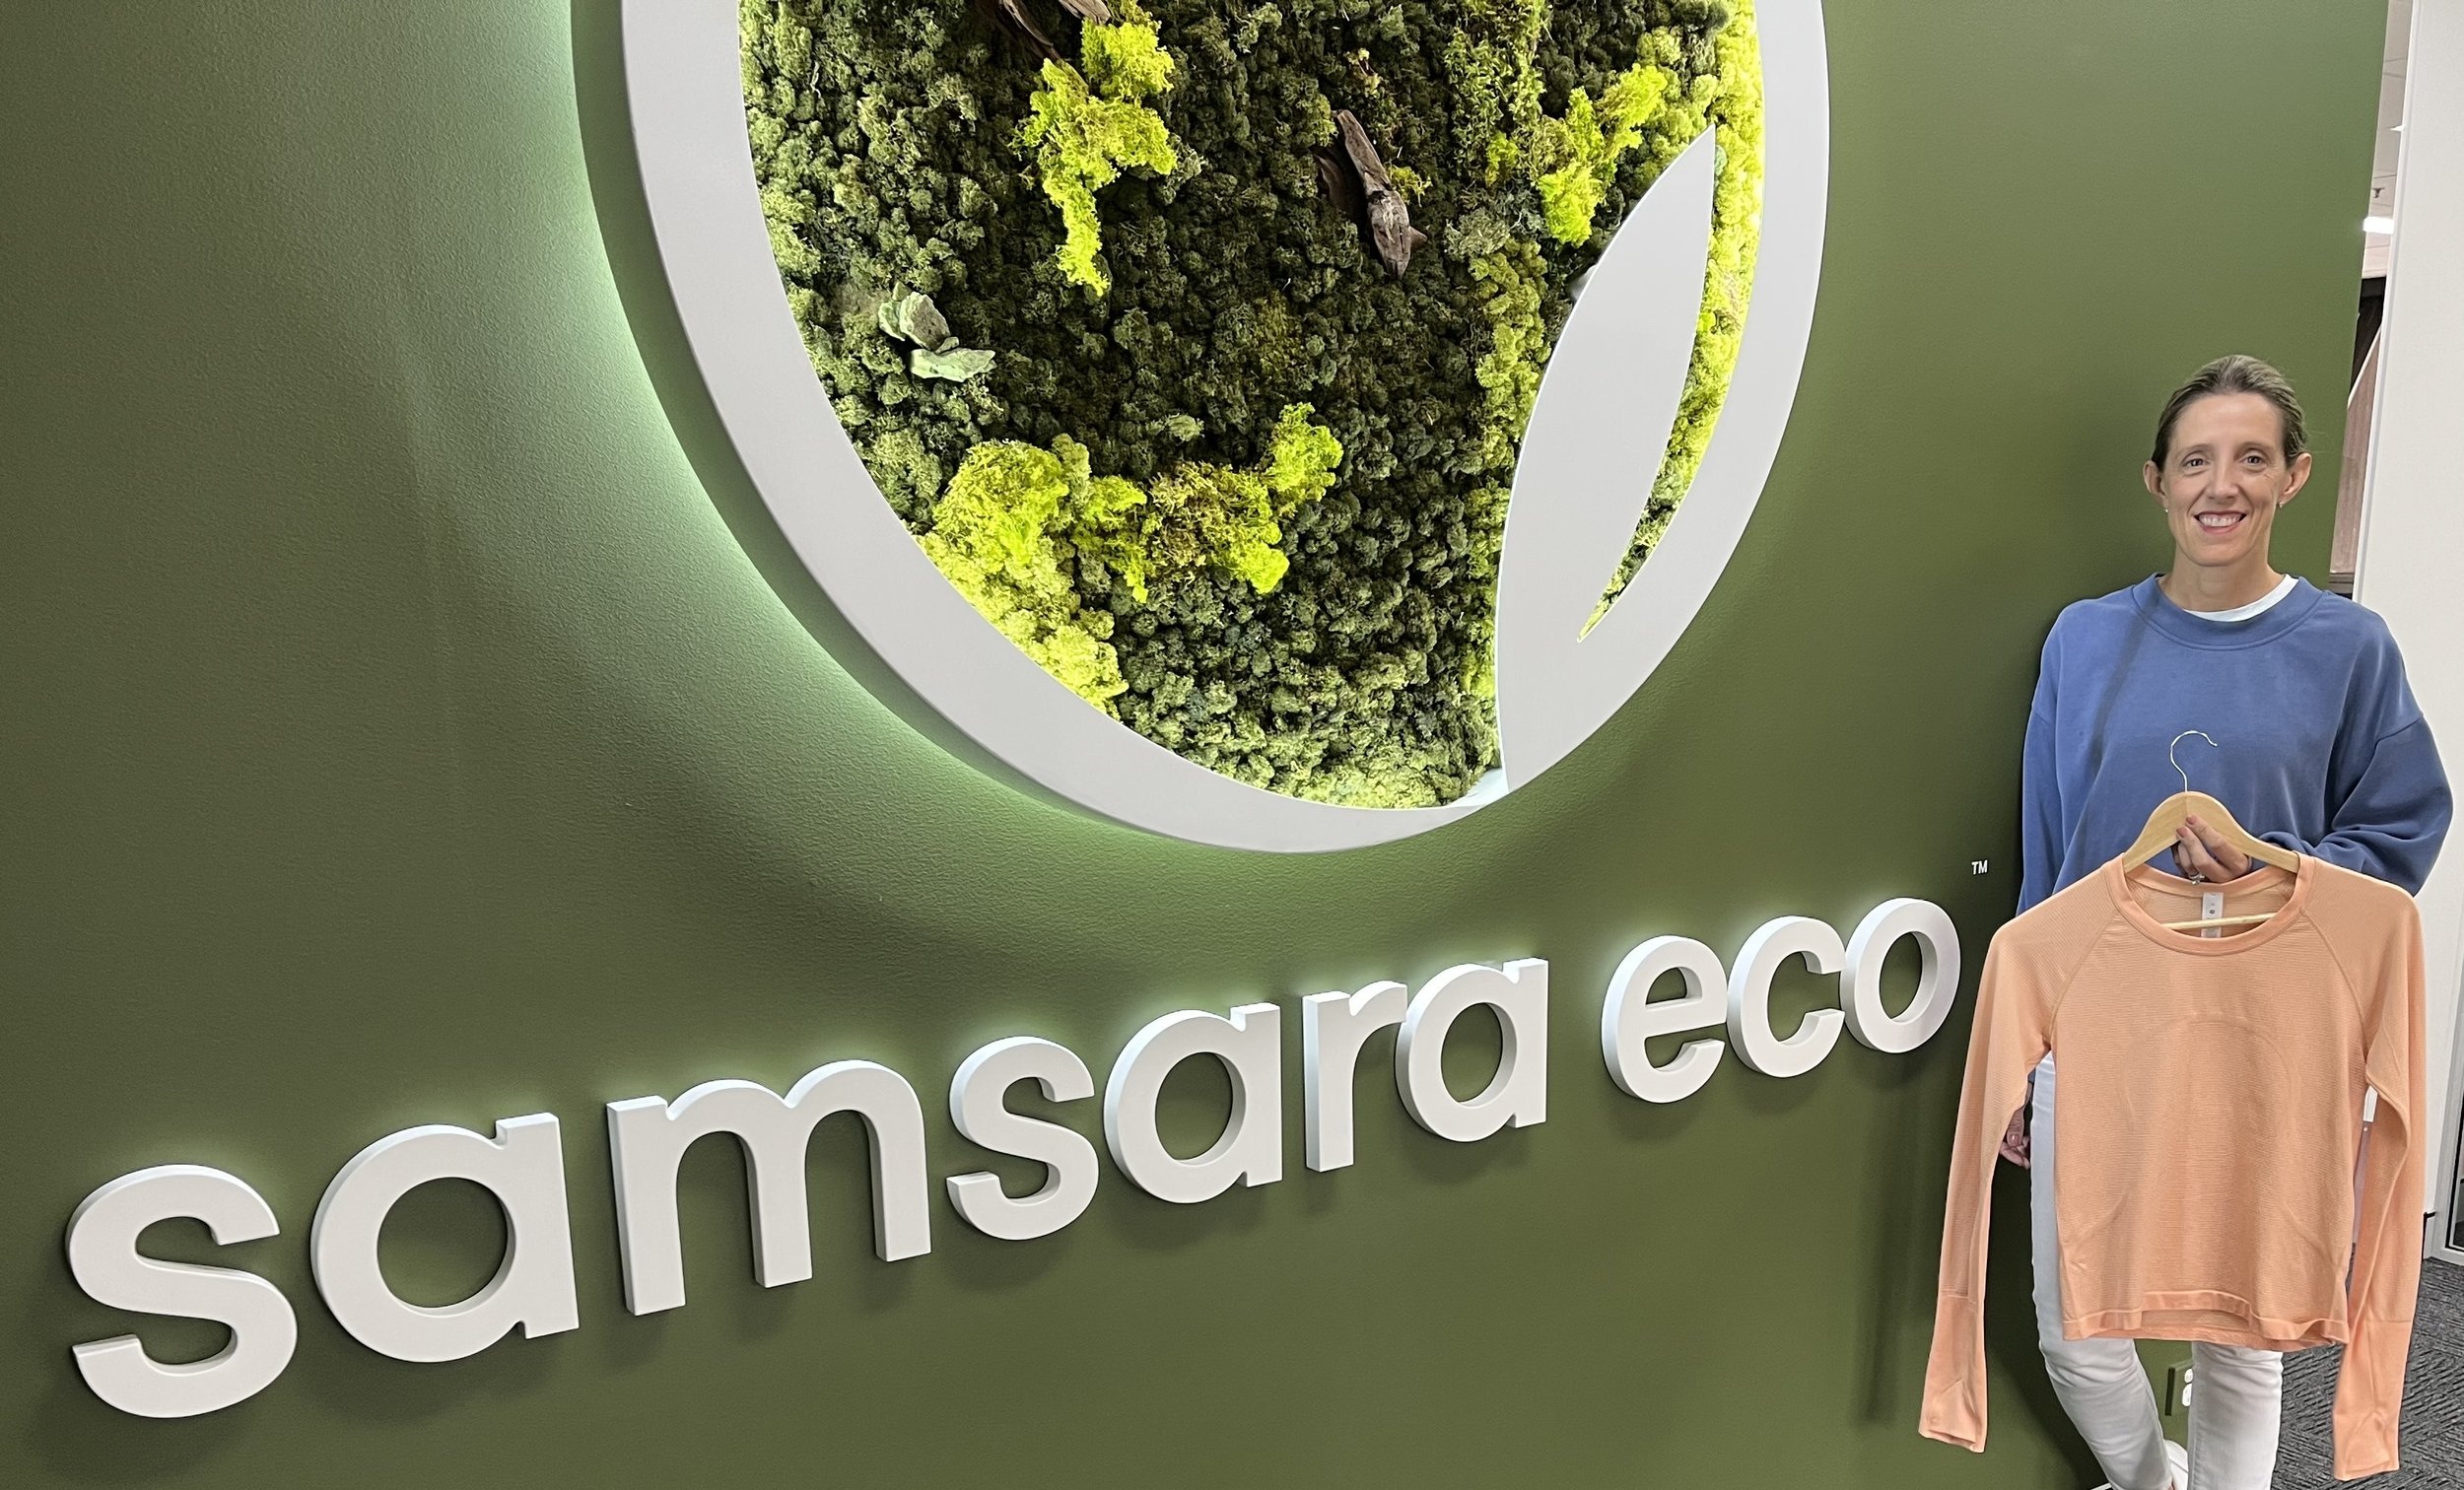 Lululemon, Samsara Eco unveil 'infinitely' recycled nylon, polyester